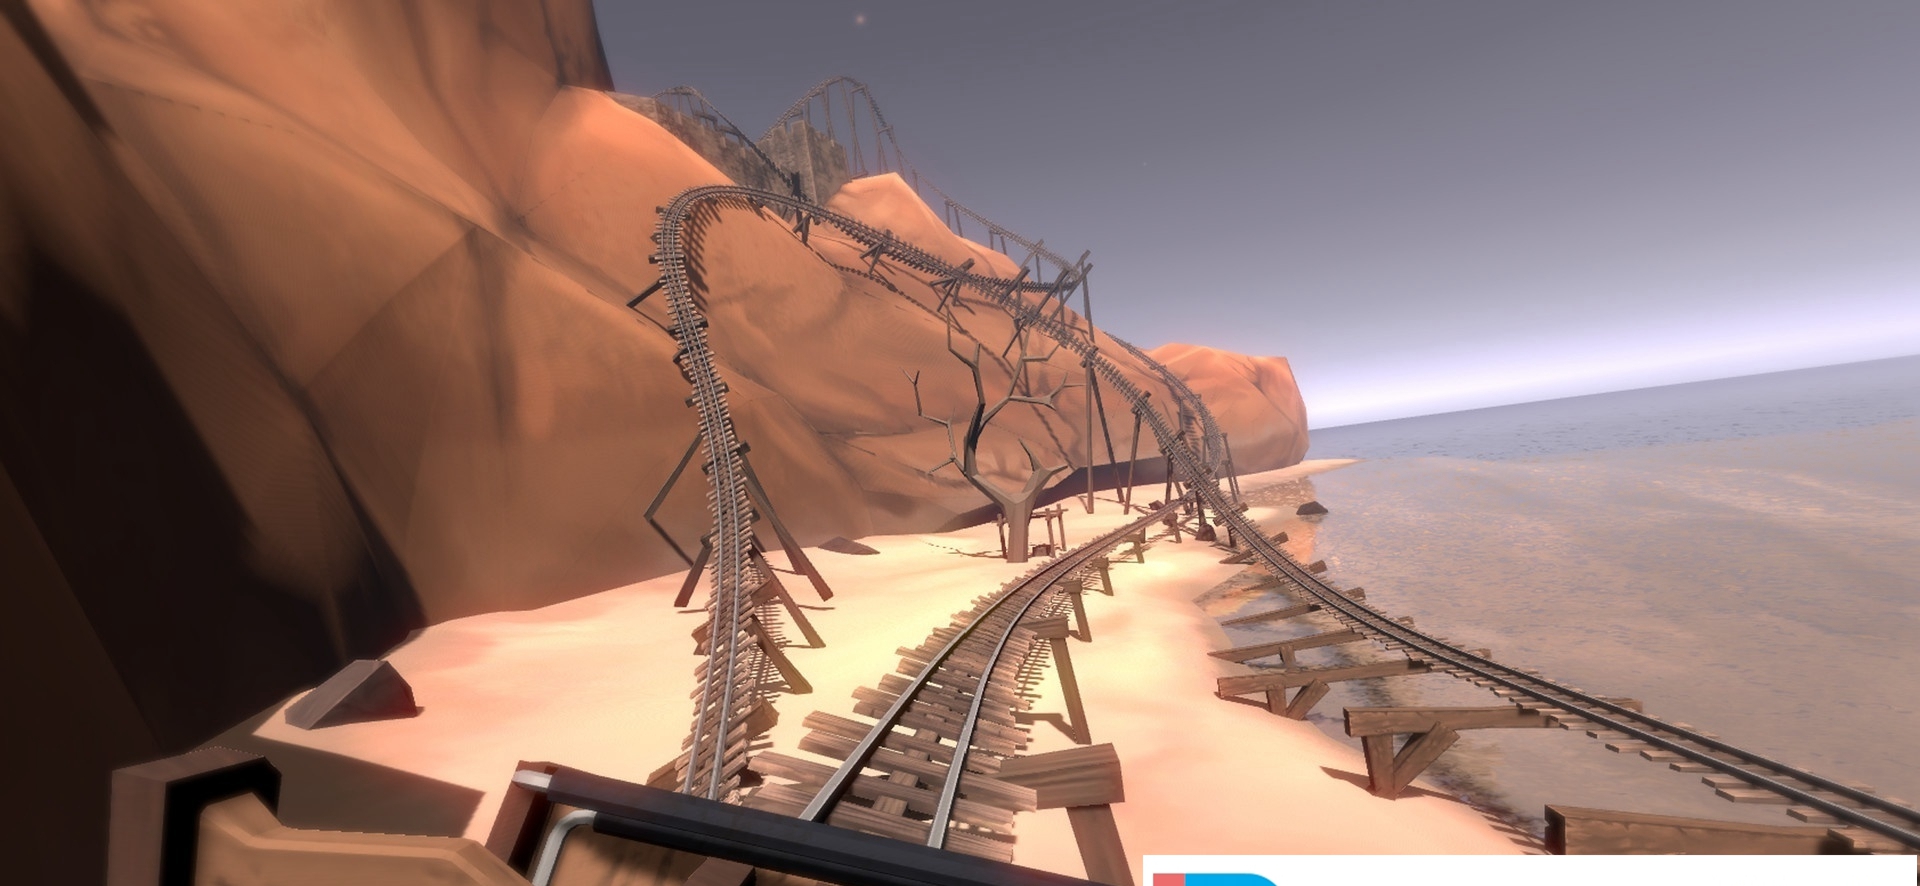 [VR交流学习] 幽灵过山车 VR (Ghost Mountain Roller Coaster)